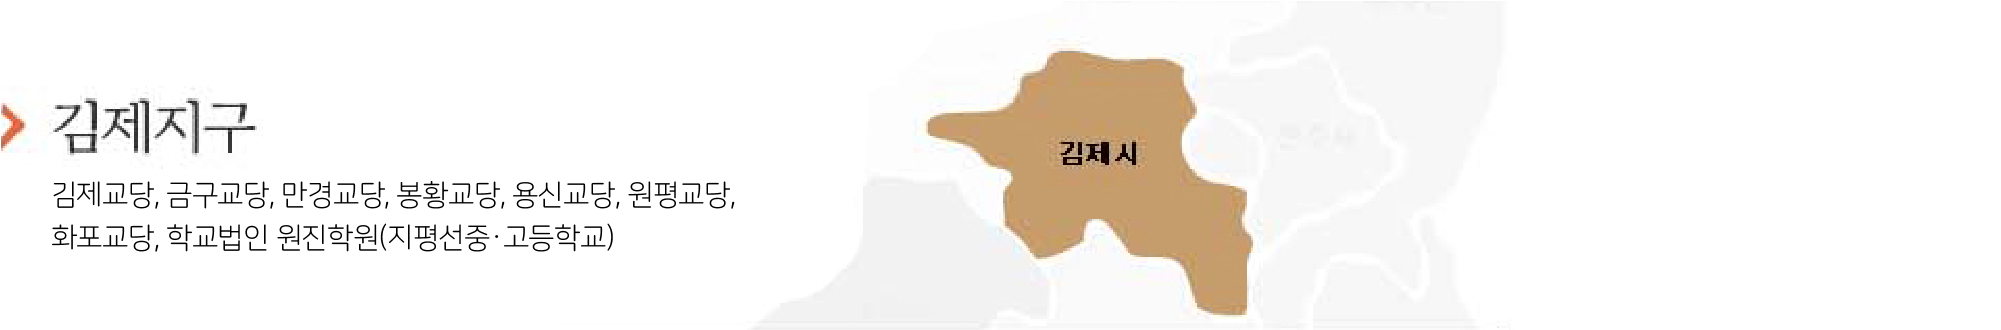 김제지구.png